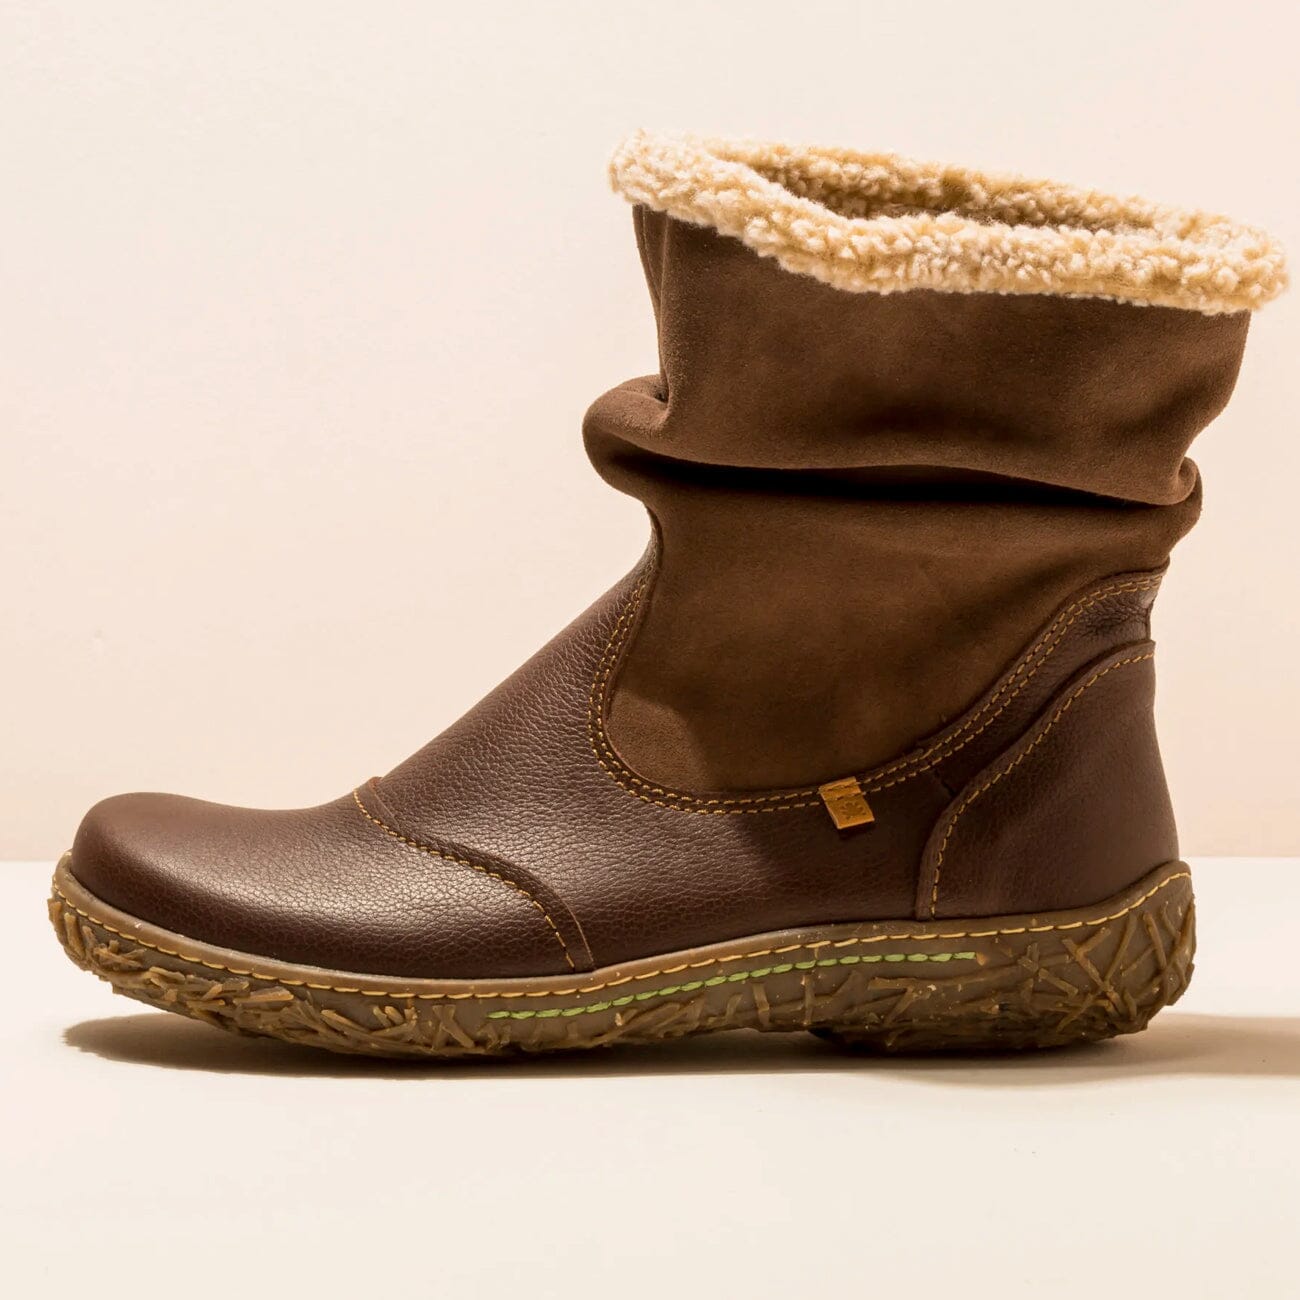 El Naturalista, NIDO ELLA, Boot, Natural Grain Leather, Brown Boots El Natura Lista Brown 38 